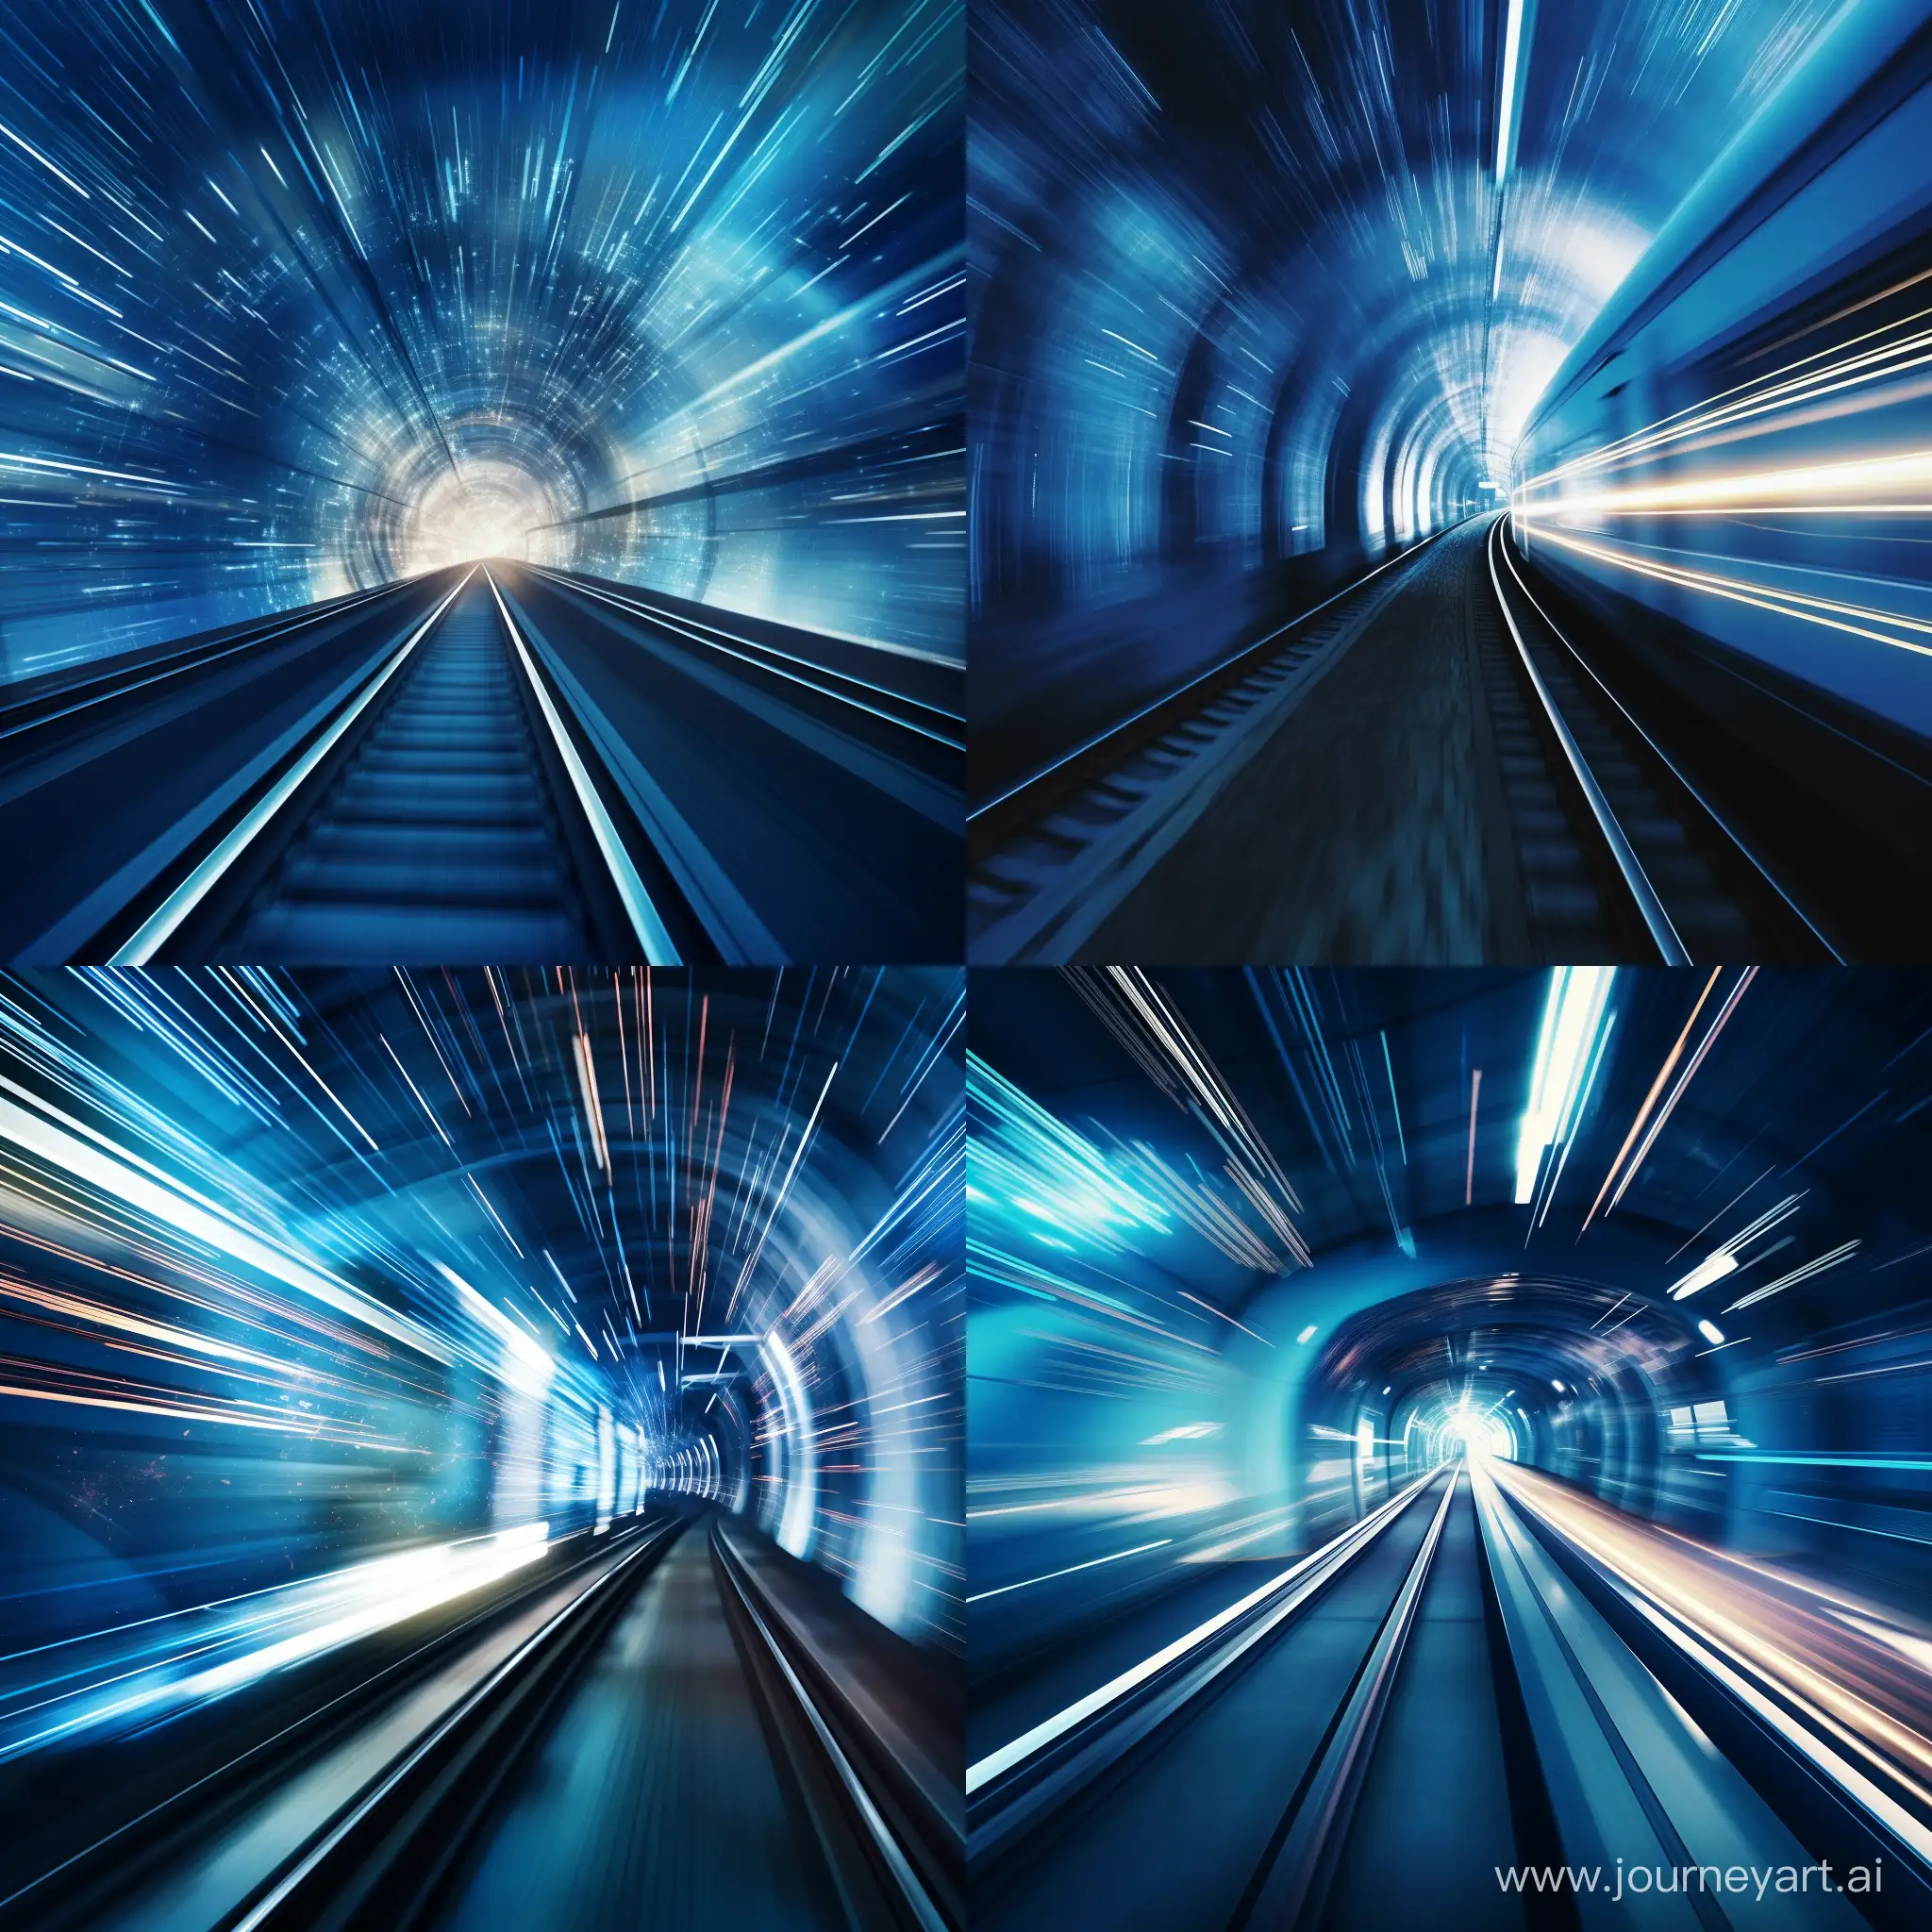 Размытый от огромной скорости поезд въезжает в мерцающий синим светом тоннель.